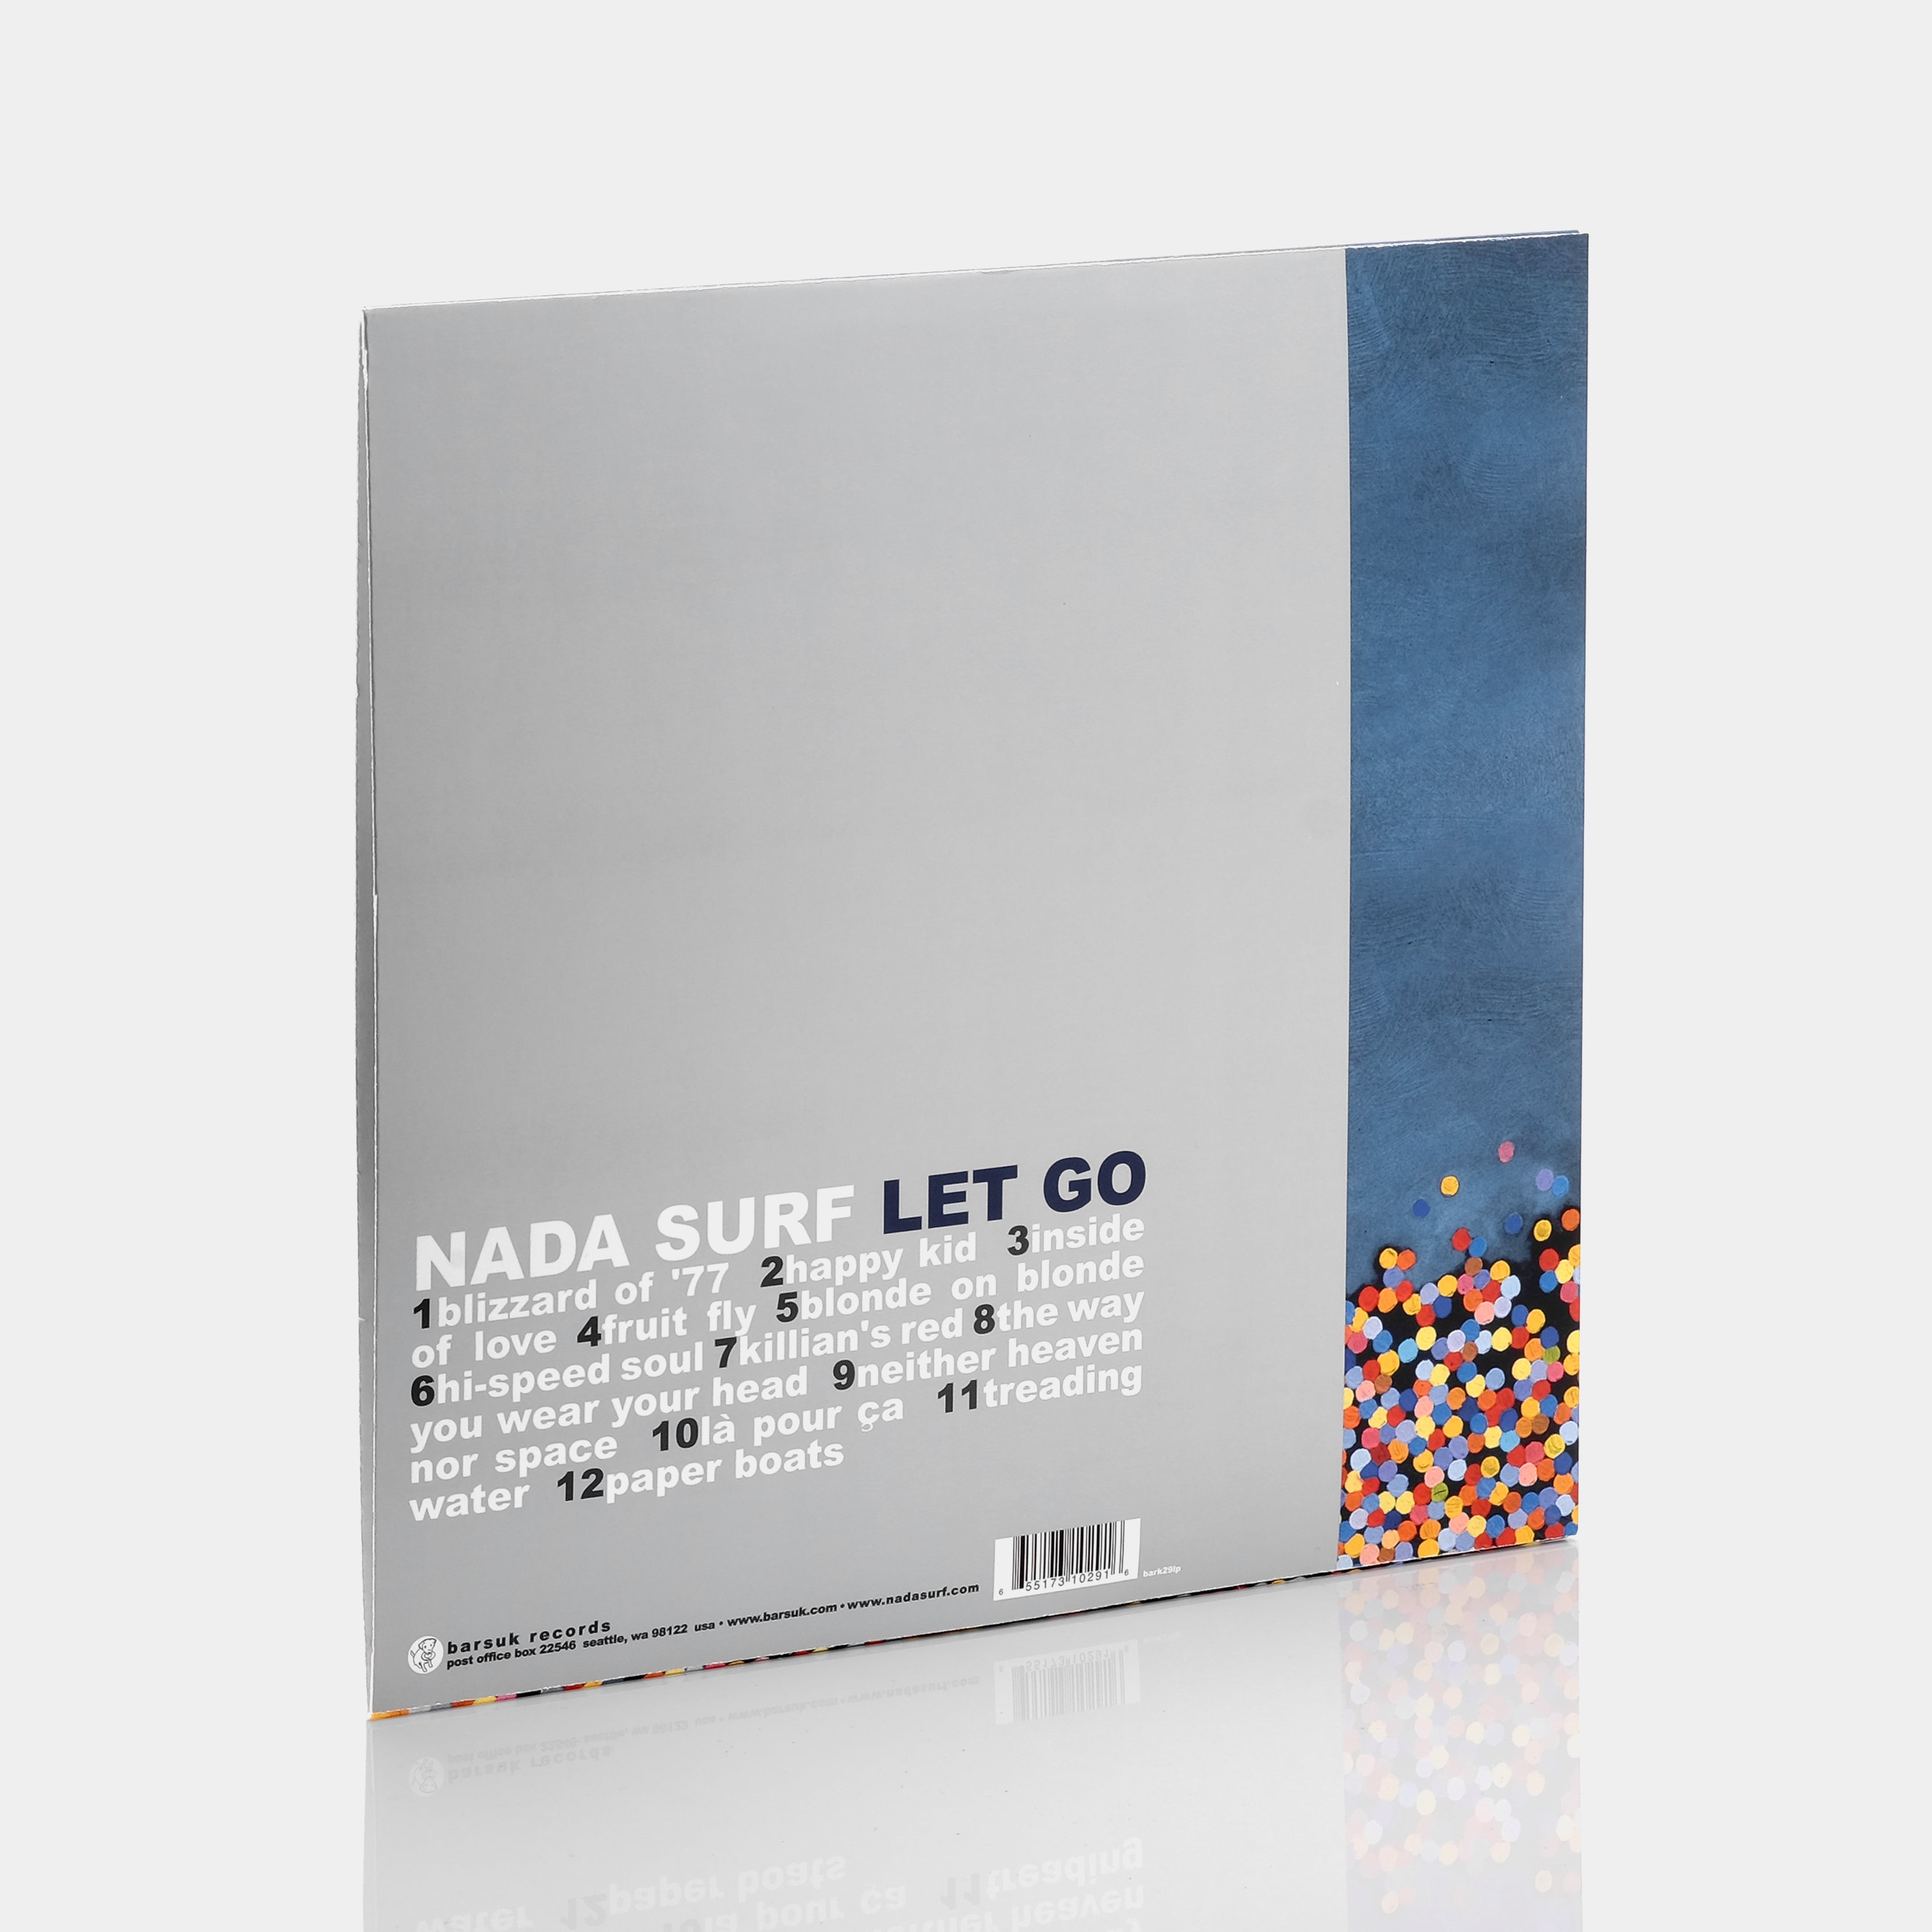 Nada Surf - Let Go 2xLP Vinyl Record